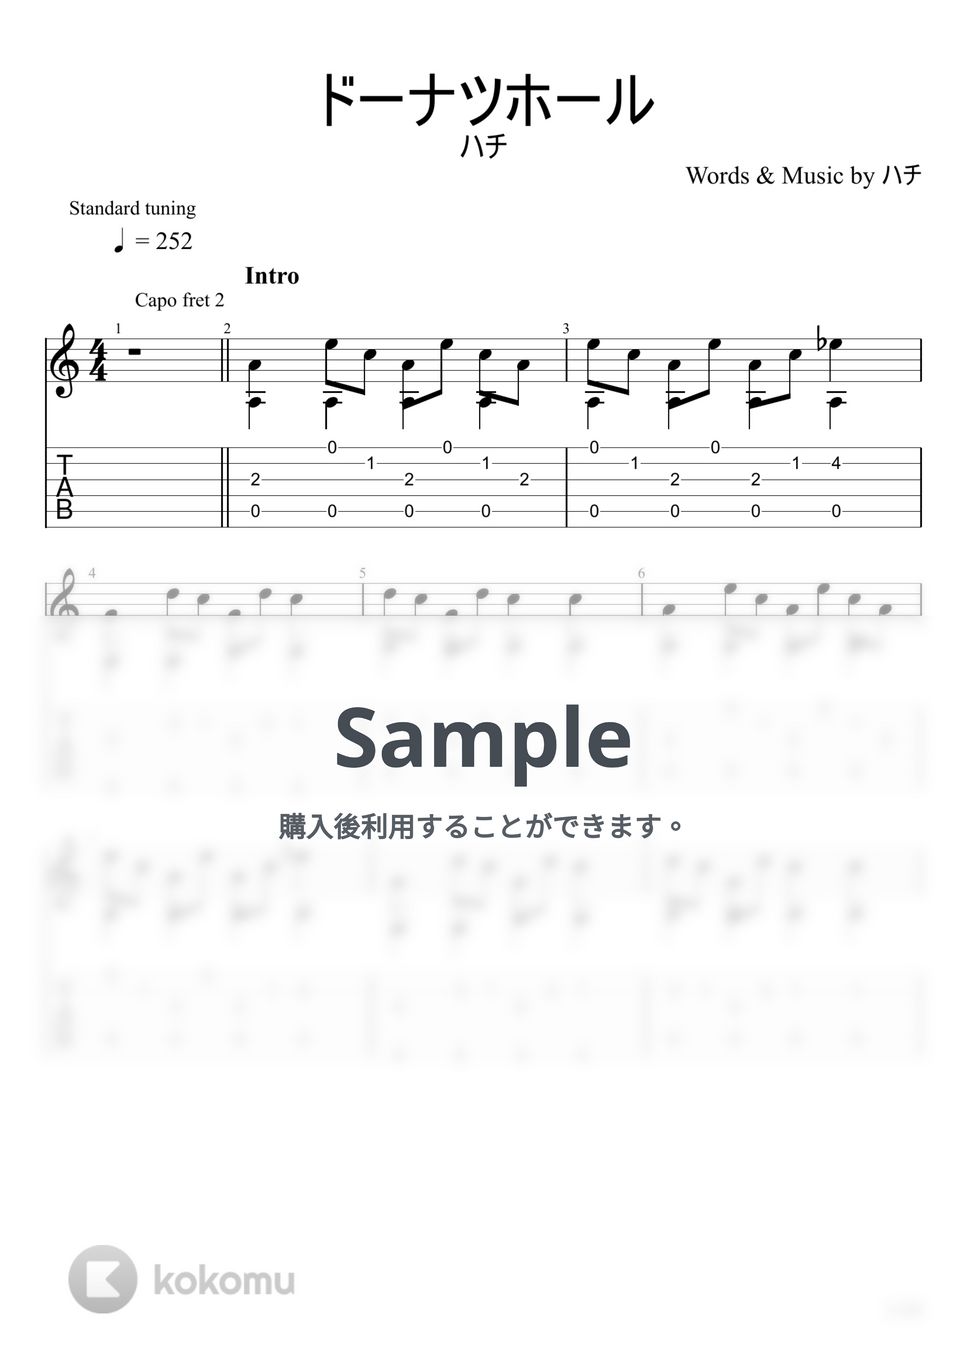 ハチ - ドーナツホール (ソロギター) by u3danchou